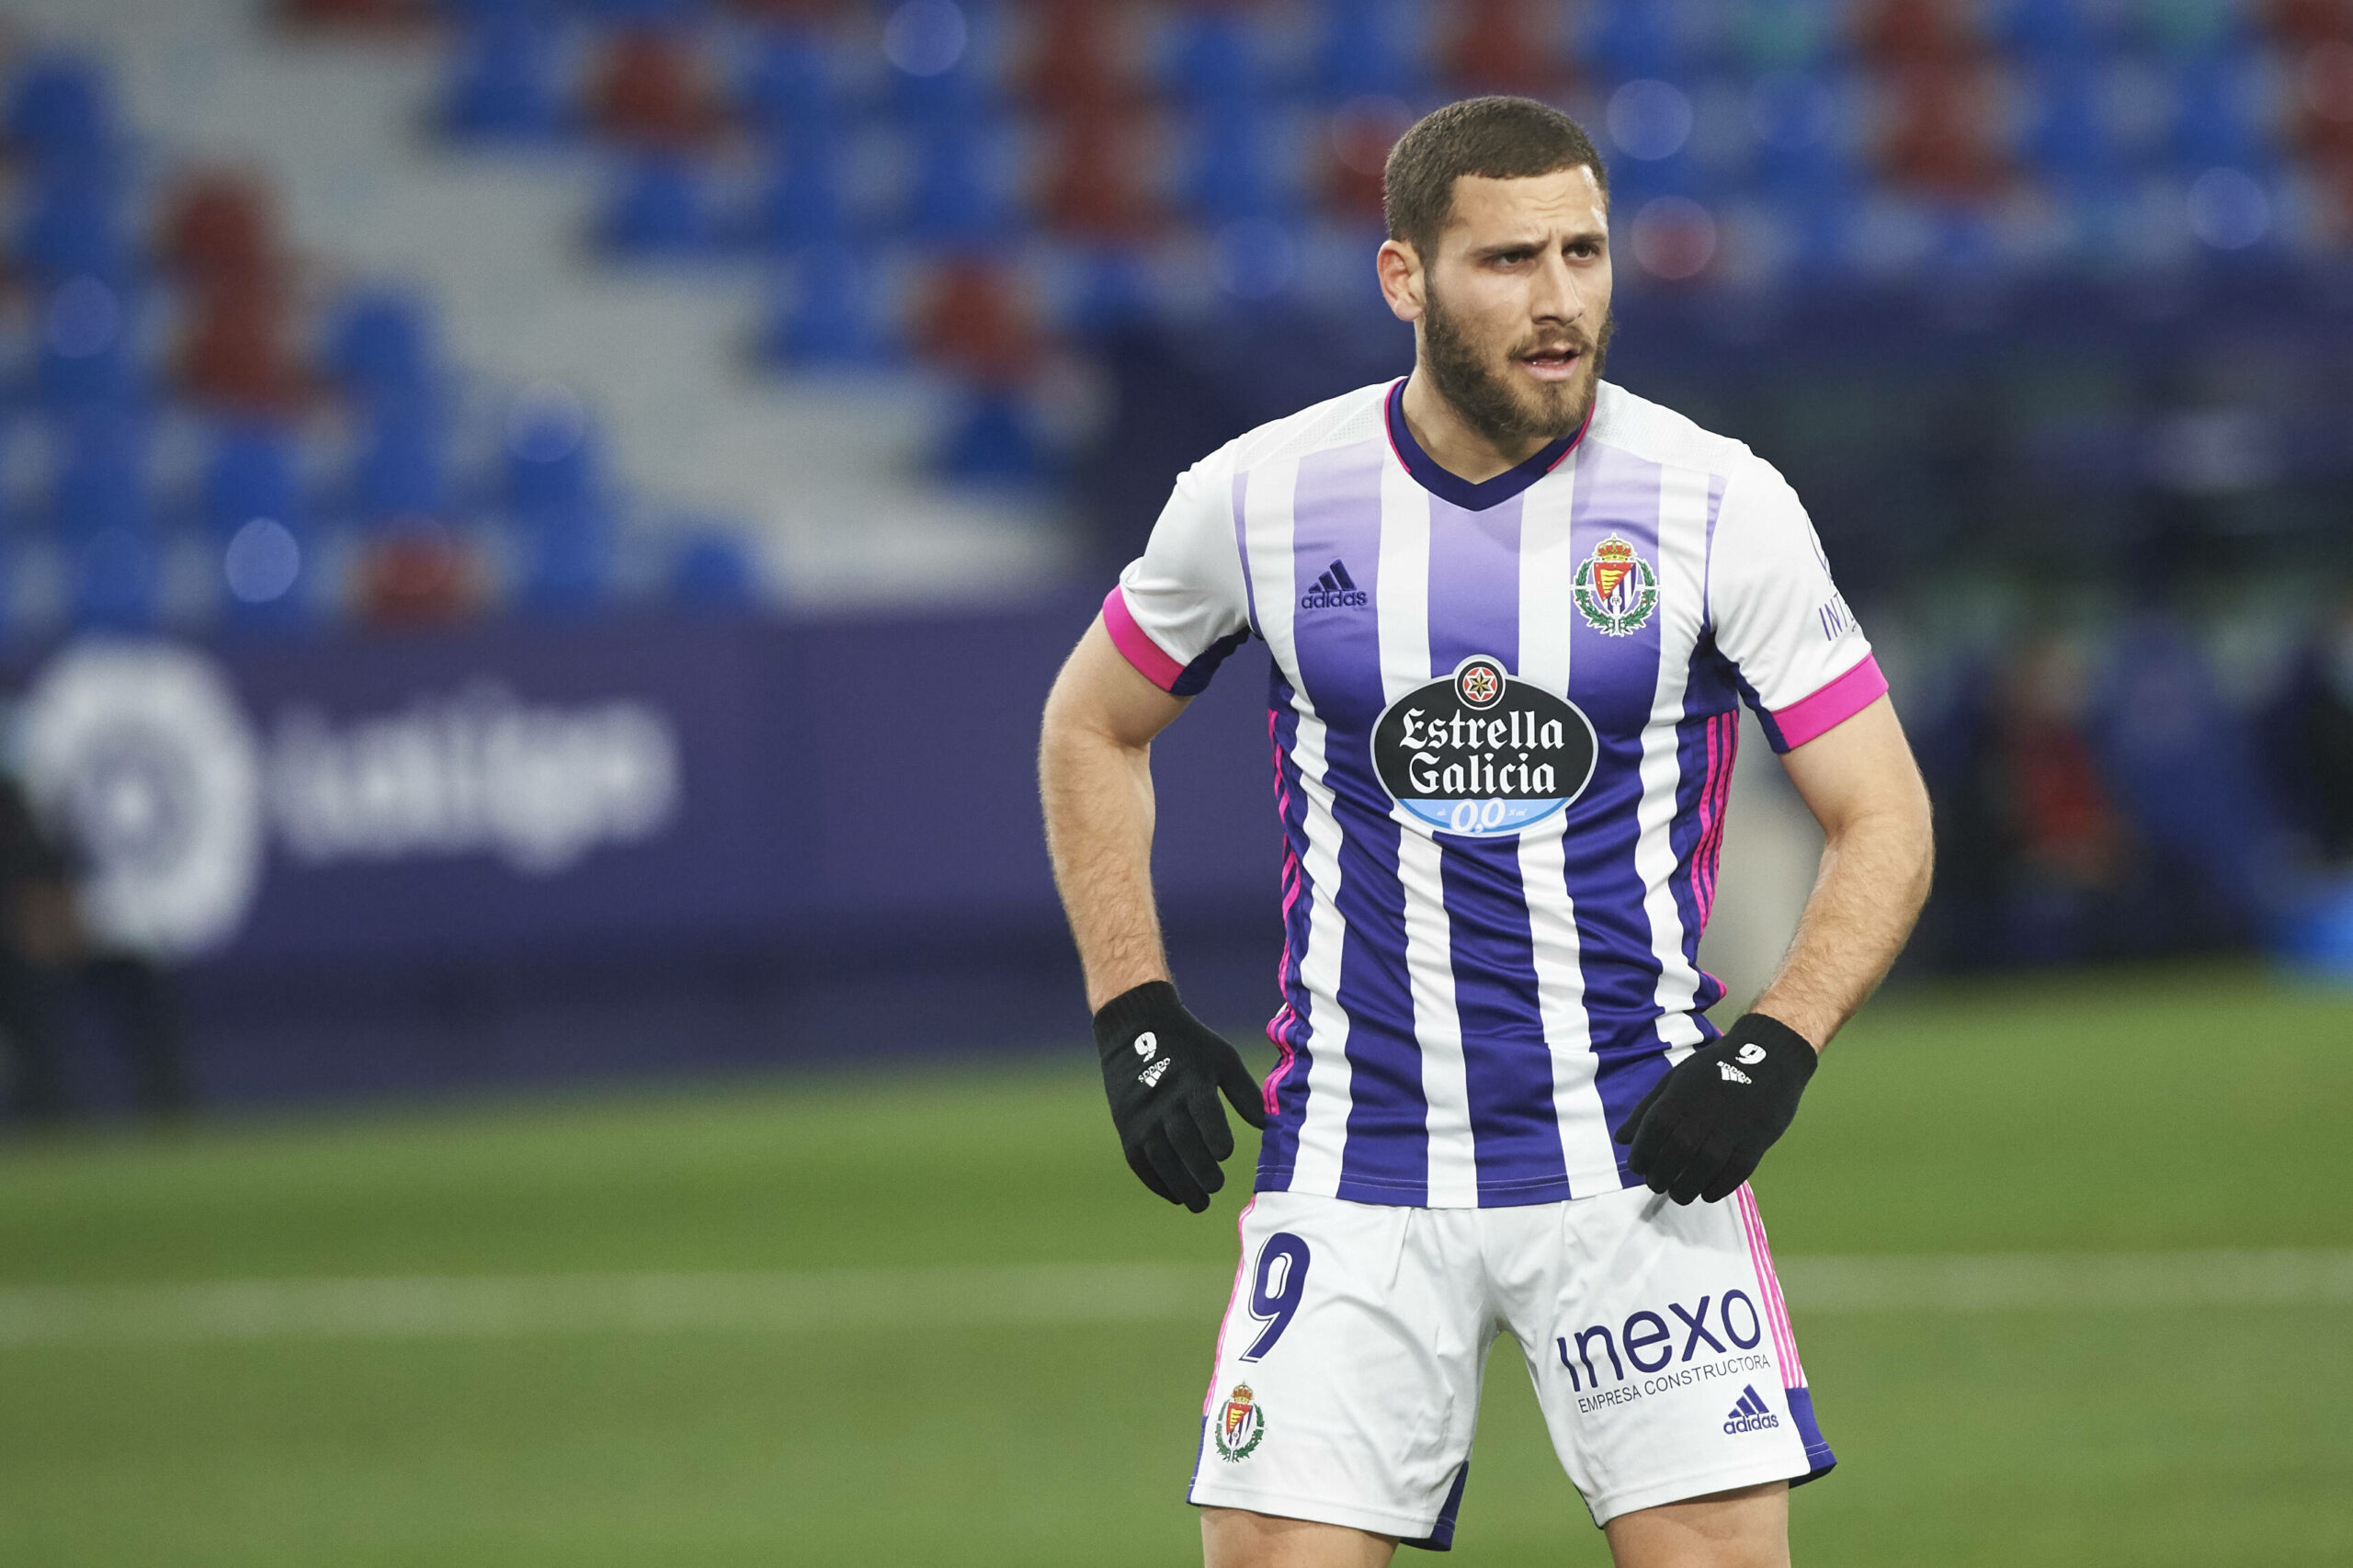 Perezoso aerolíneas Sobrio Top 5: los mejores jugadores del Real Valladolid en Comunio de 2ª